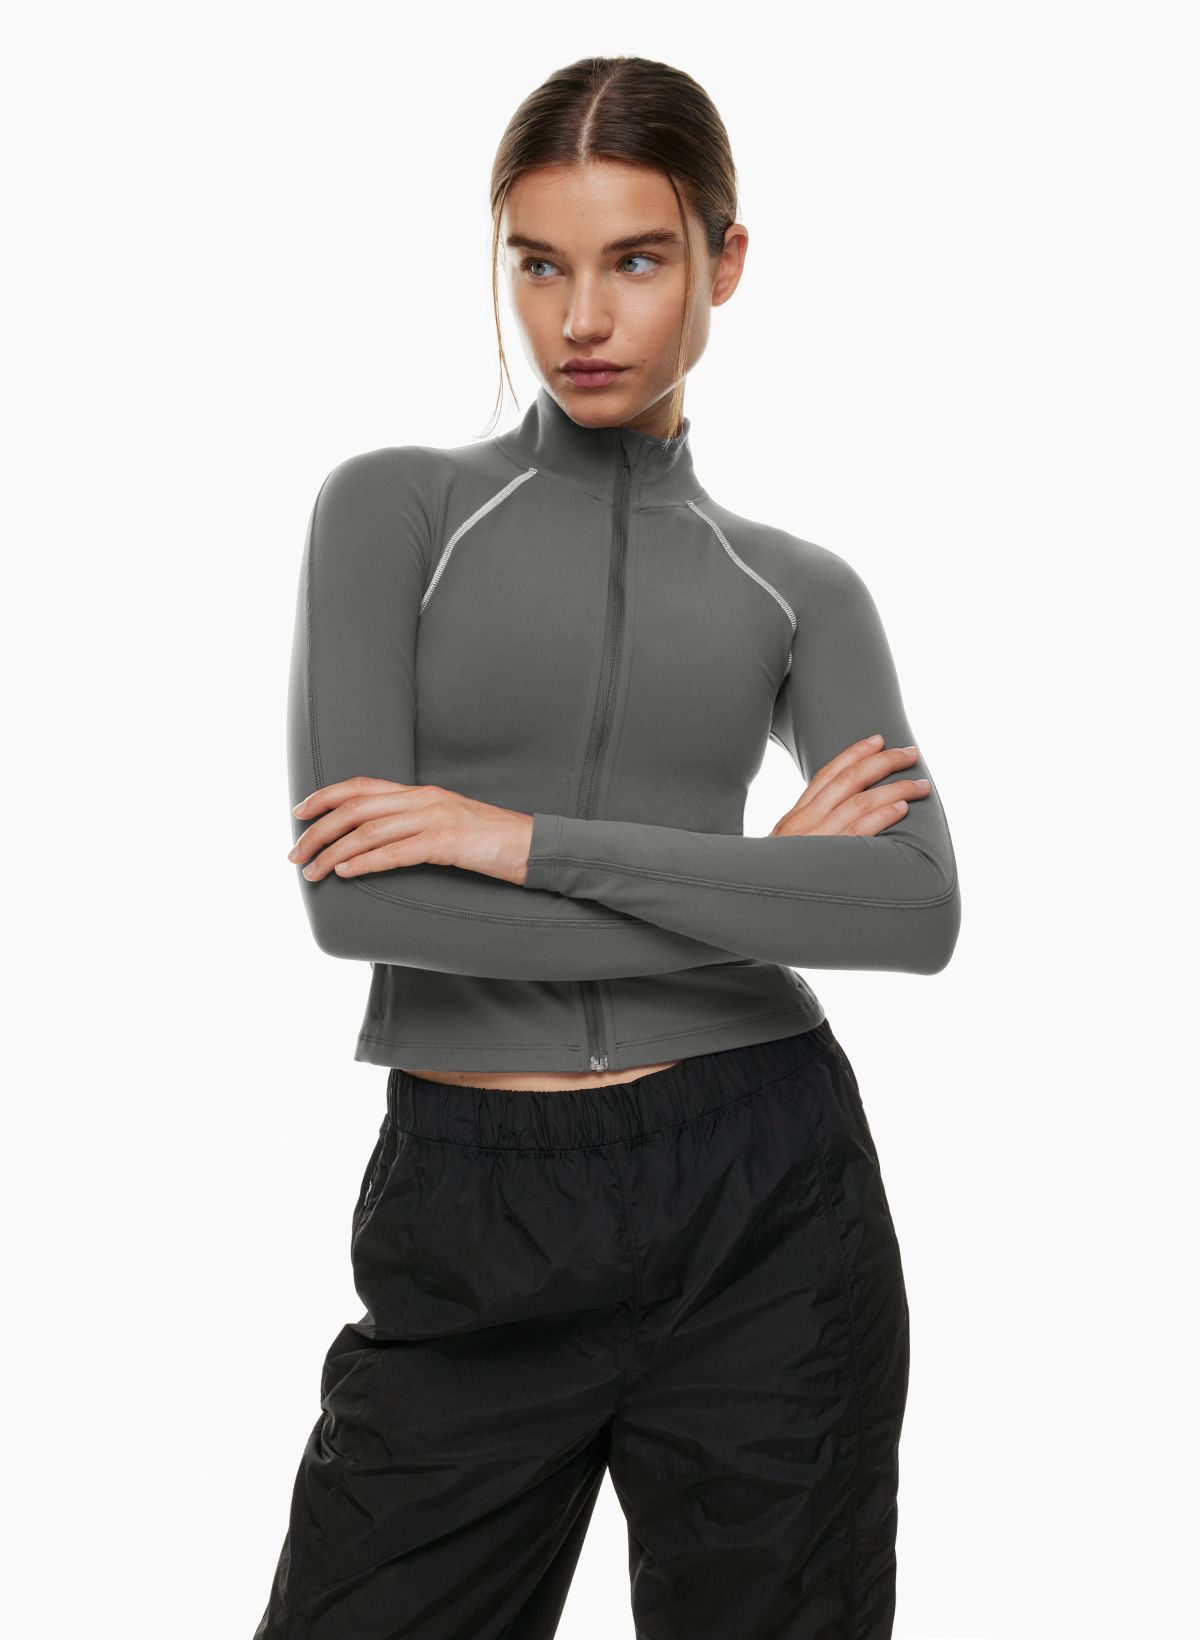 Lululemon Exhalation Sweatshirt Womens 4 Grey Long Sleeve Longline